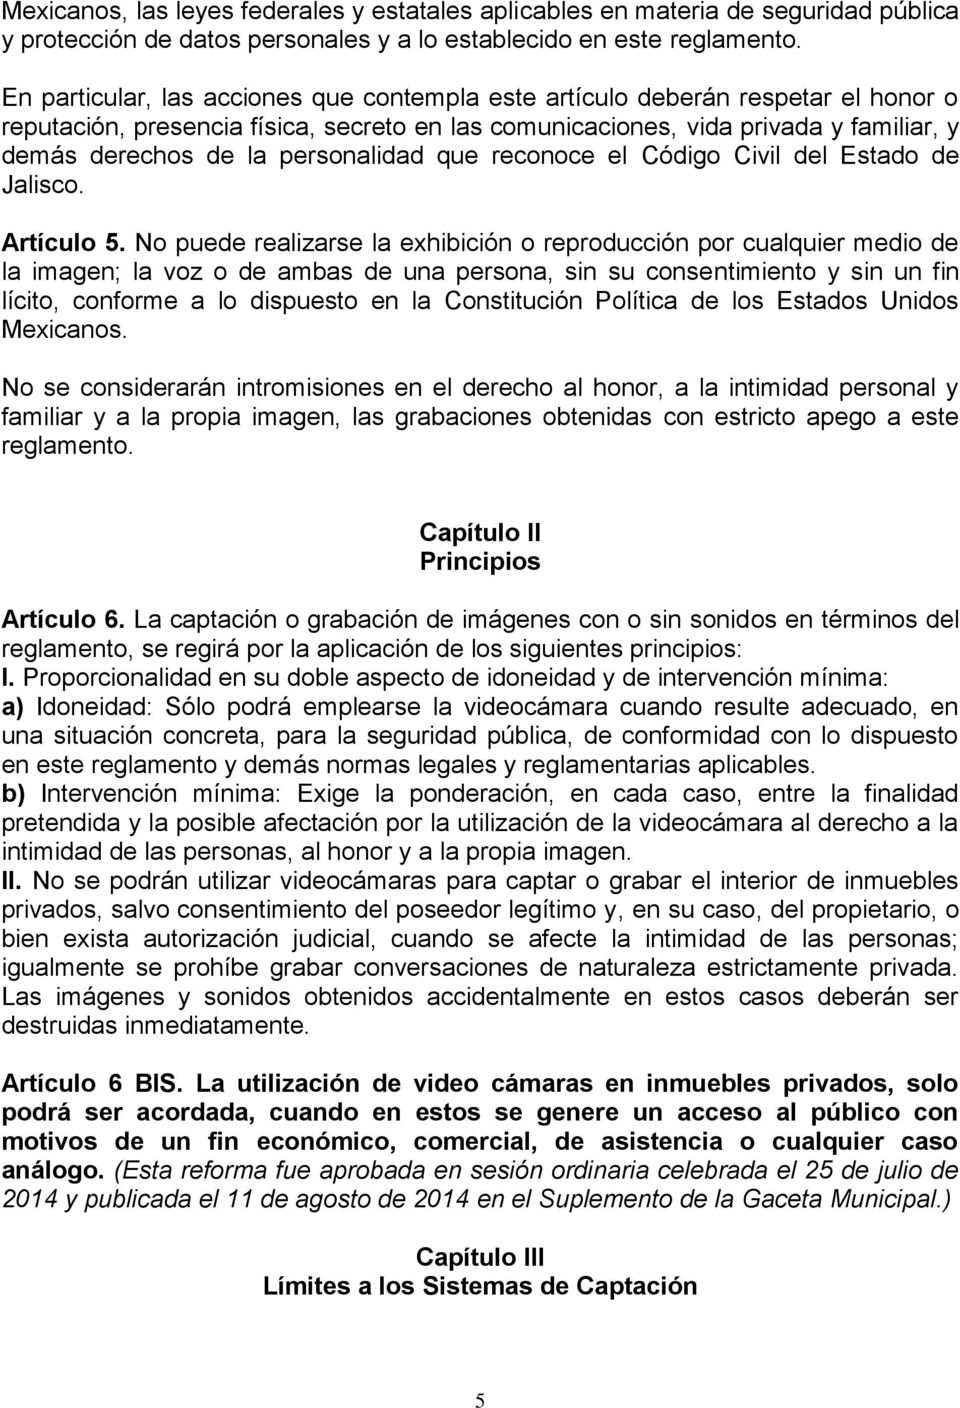 personalidad que reconoce el Código Civil del Estado de Jalisco. Artículo 5.